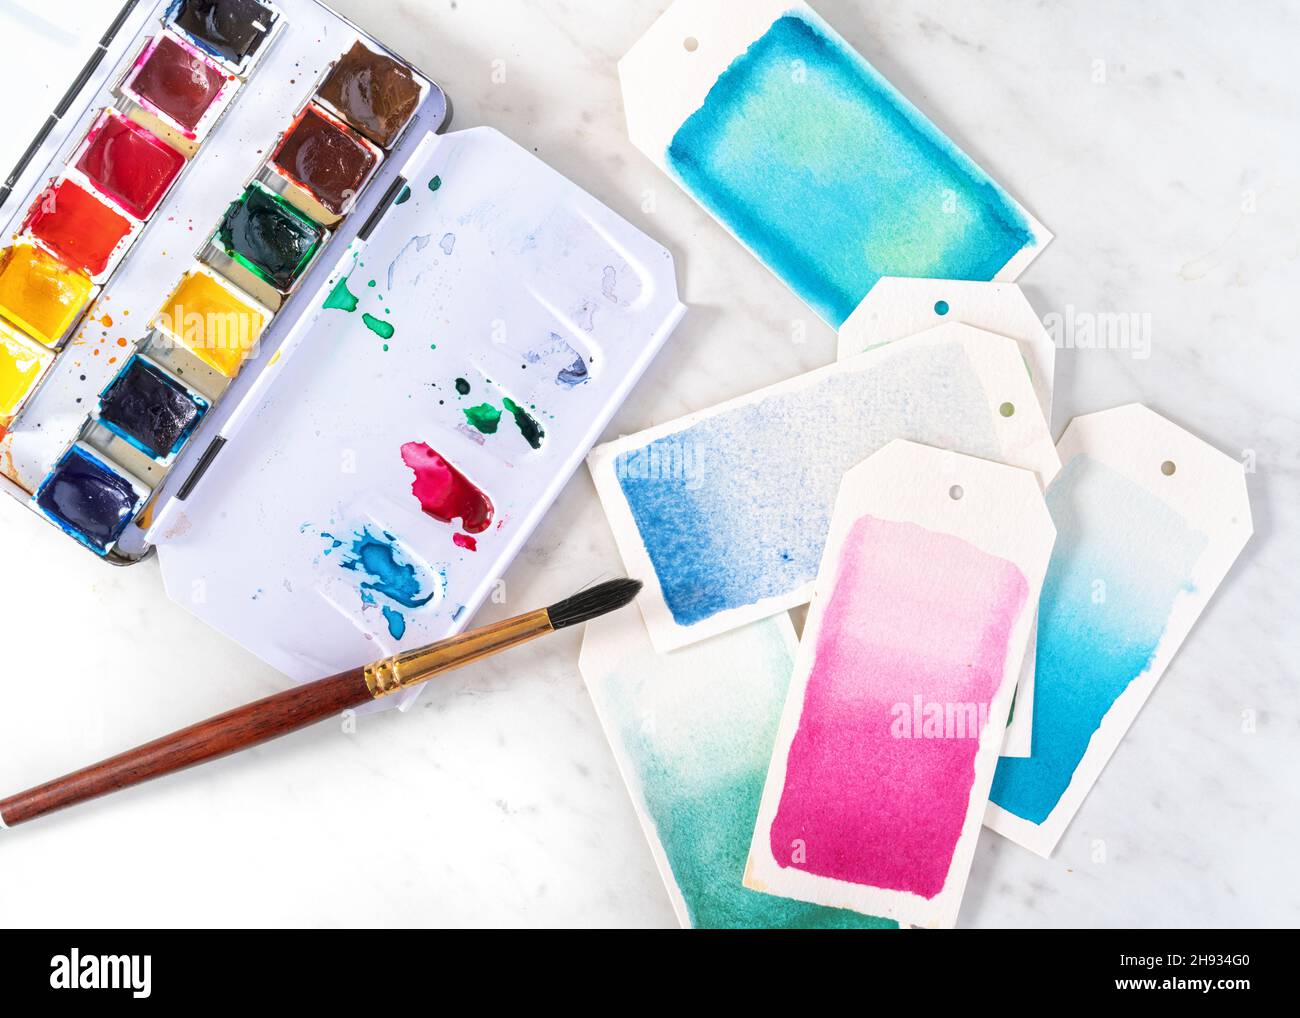 Öffnen Sie Aquarell-Paint-Box mit Pinsel malen Geschenk-Tags. Stockfoto